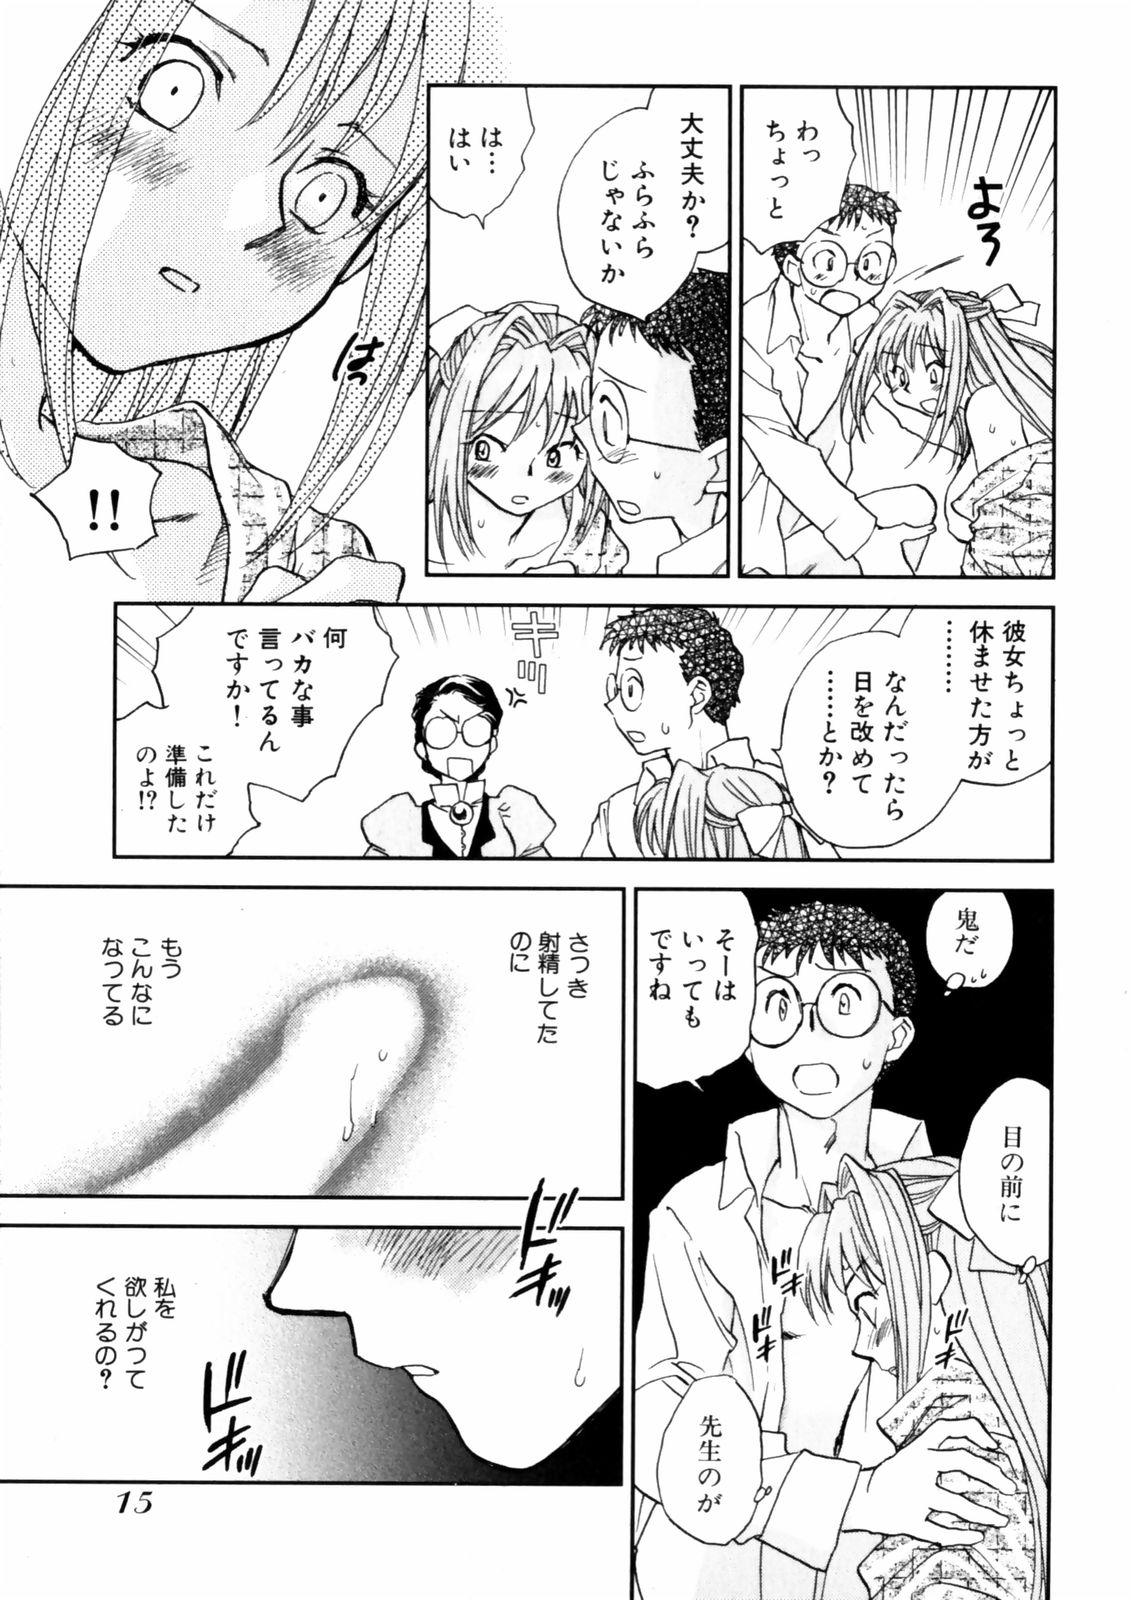 [Okano Ahiru] Hanasake ! Otome Juku (Otome Private Tutoring School) Vol.2 16